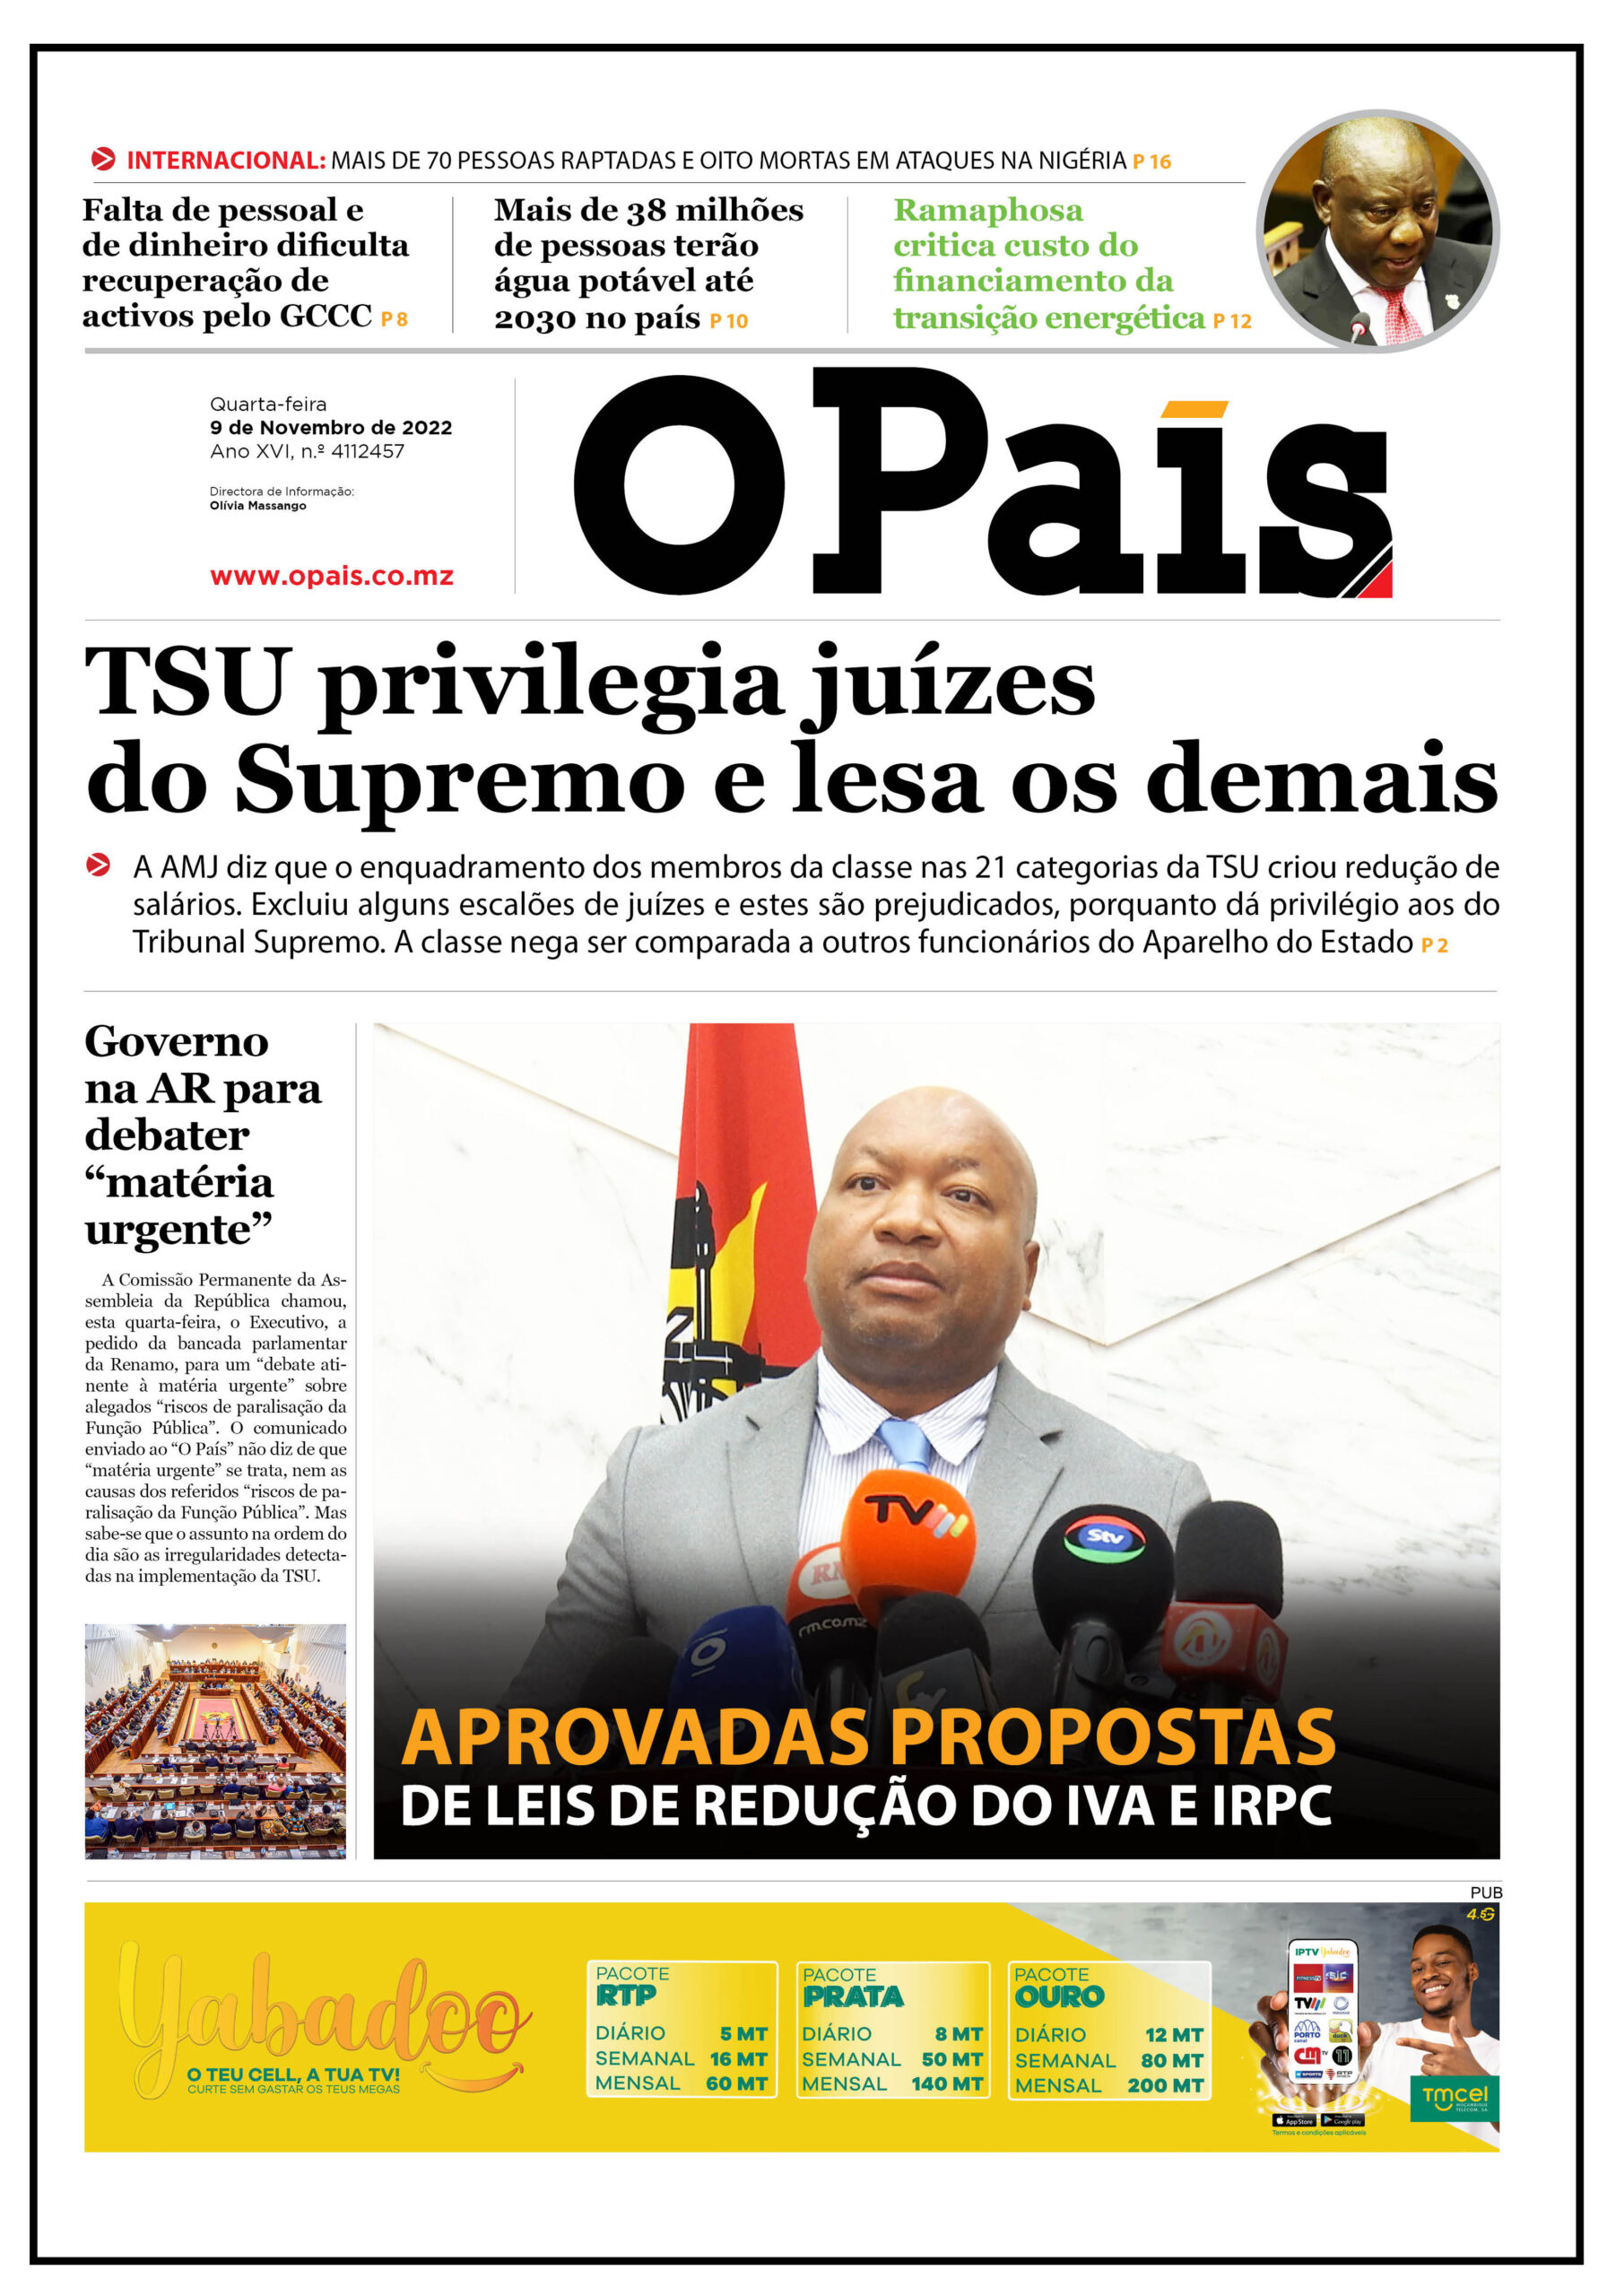 Capa Do Jornal Diário 09112022 O País A Verdade Como Notícia 2166